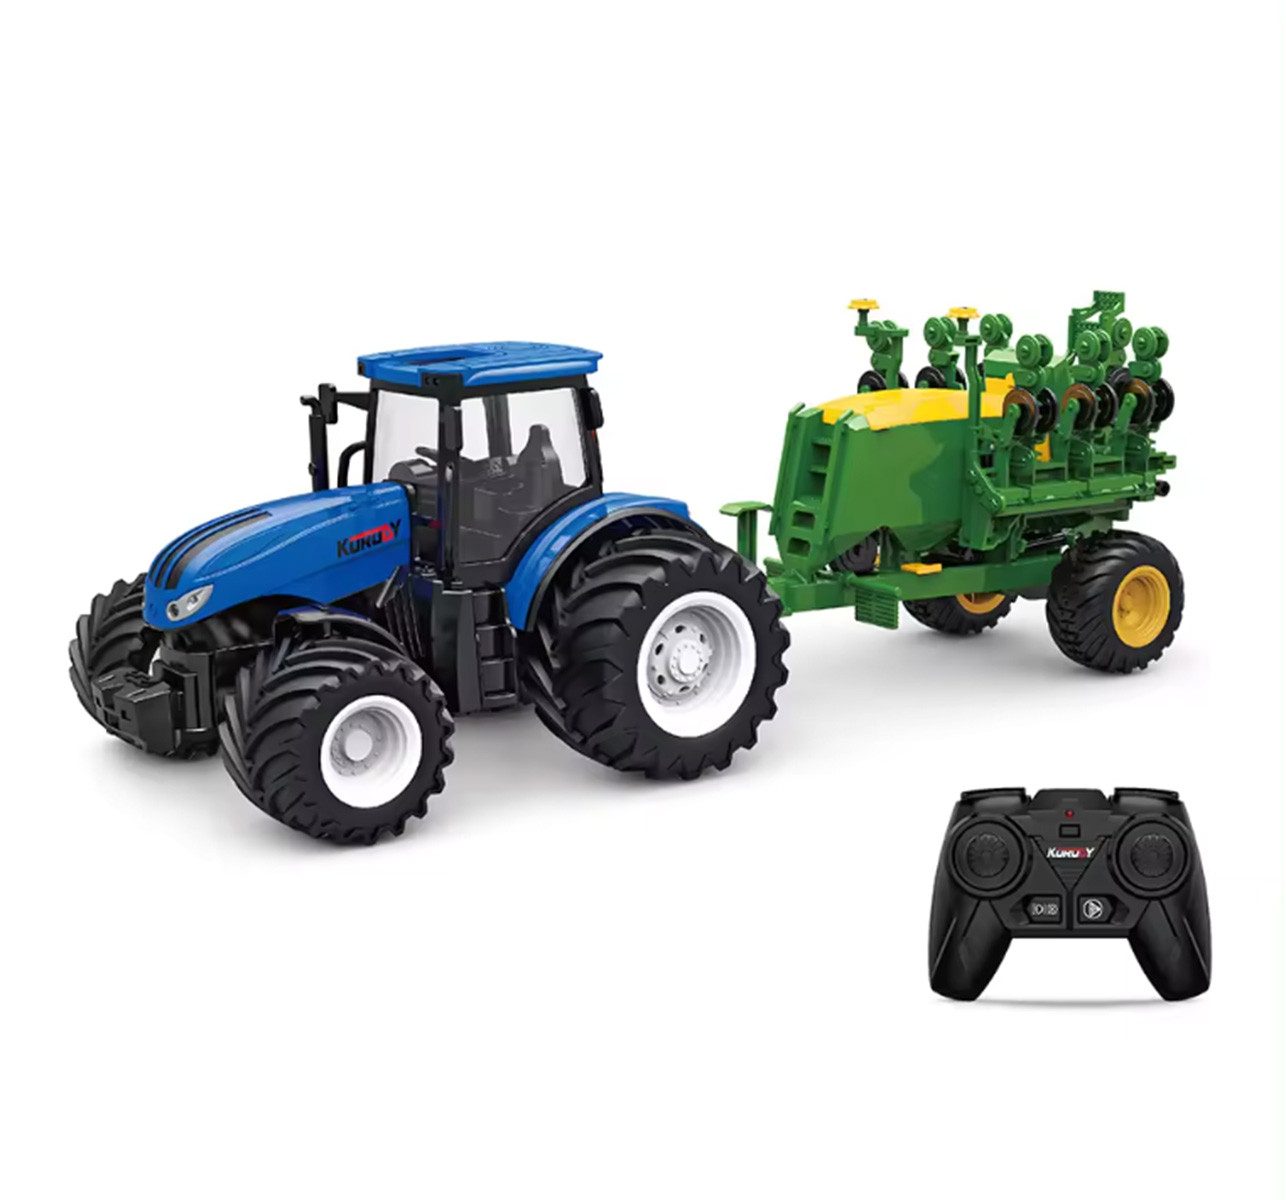 efaso RC-Traktor 6646 Ferngesteuerter Traktor blau mit Sämaschine - LED Beleuchtung, 30min Spielzeit / Demo-Funktion / Metall-Haube